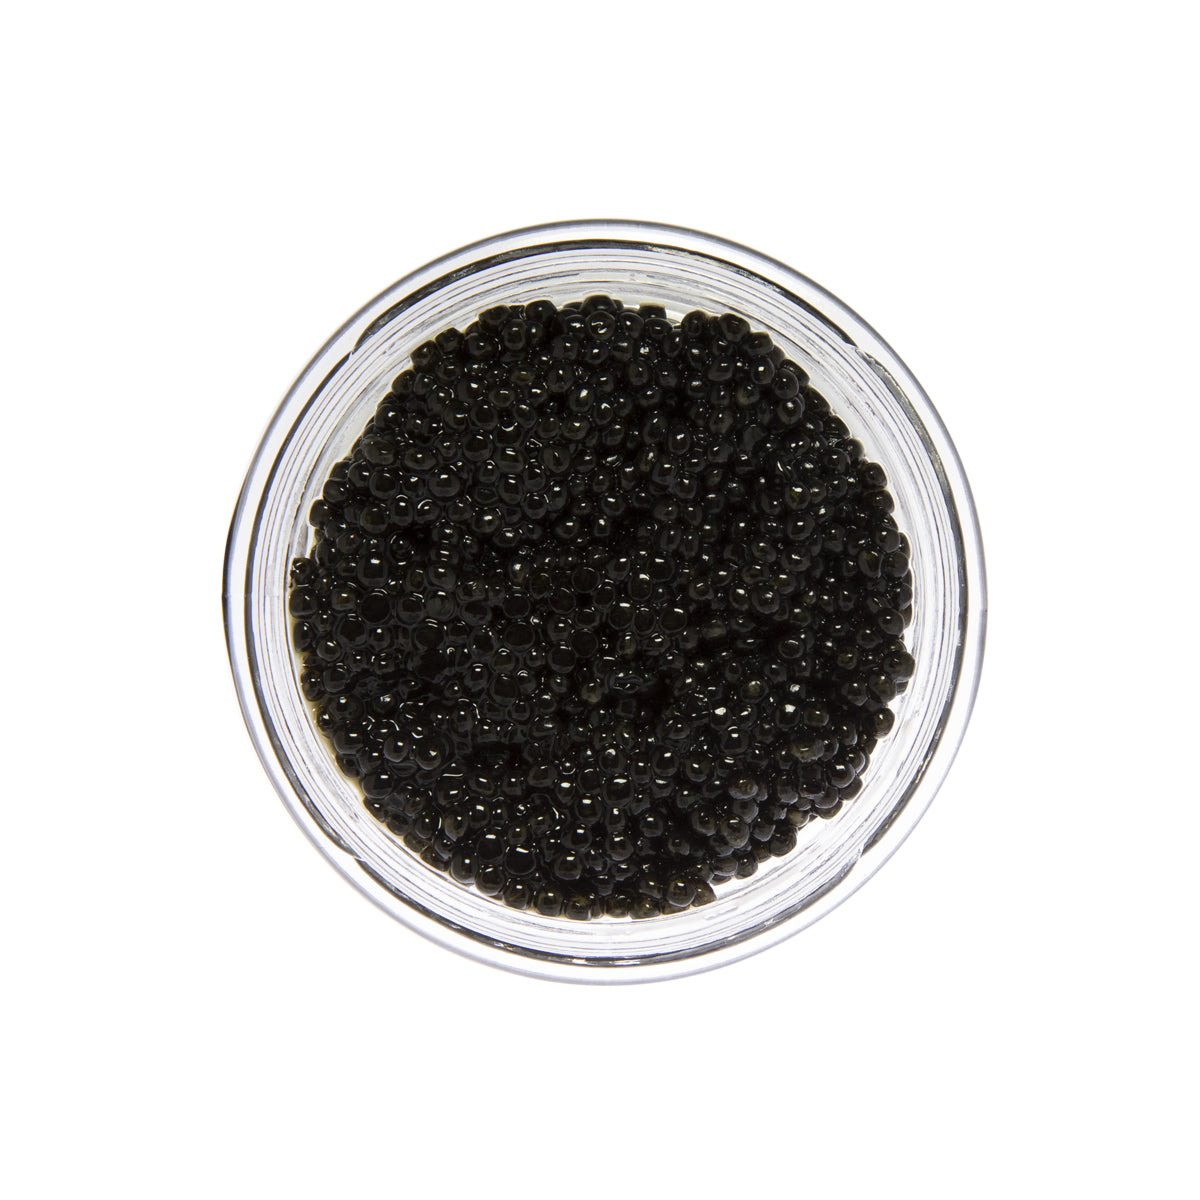 Caviar Star California White Sturgeon Caviar